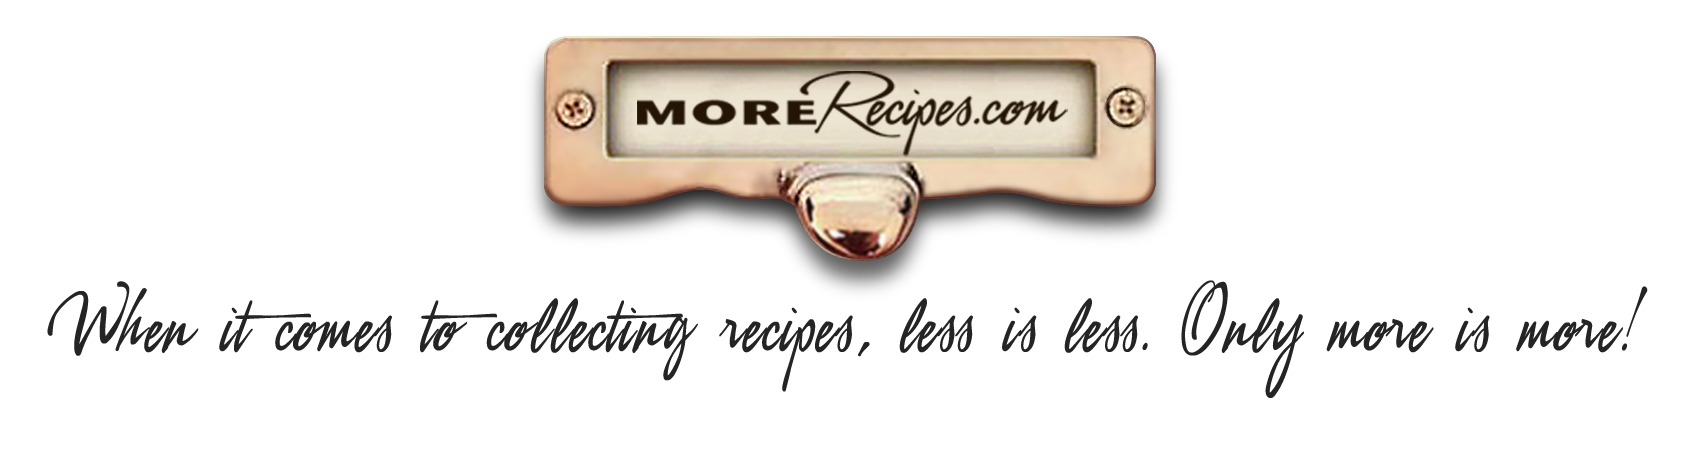 MoreRecipes.com logo and tagline